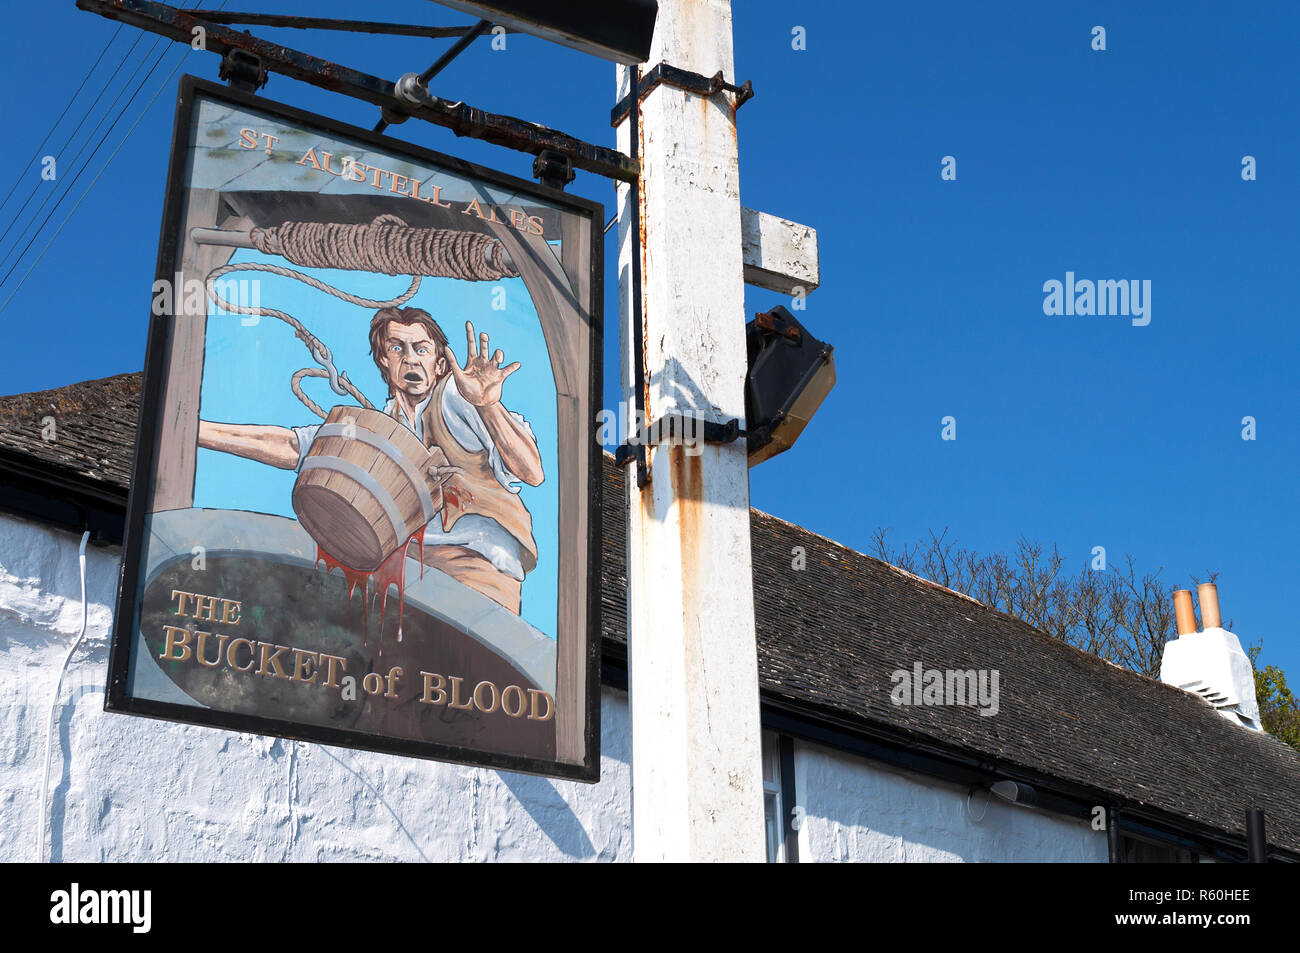 L'infâme de pub dans le village de phillack près de Hayle, Cornwall, Angleterre, Grande-Bretagne, Royaume-Uni. Banque D'Images